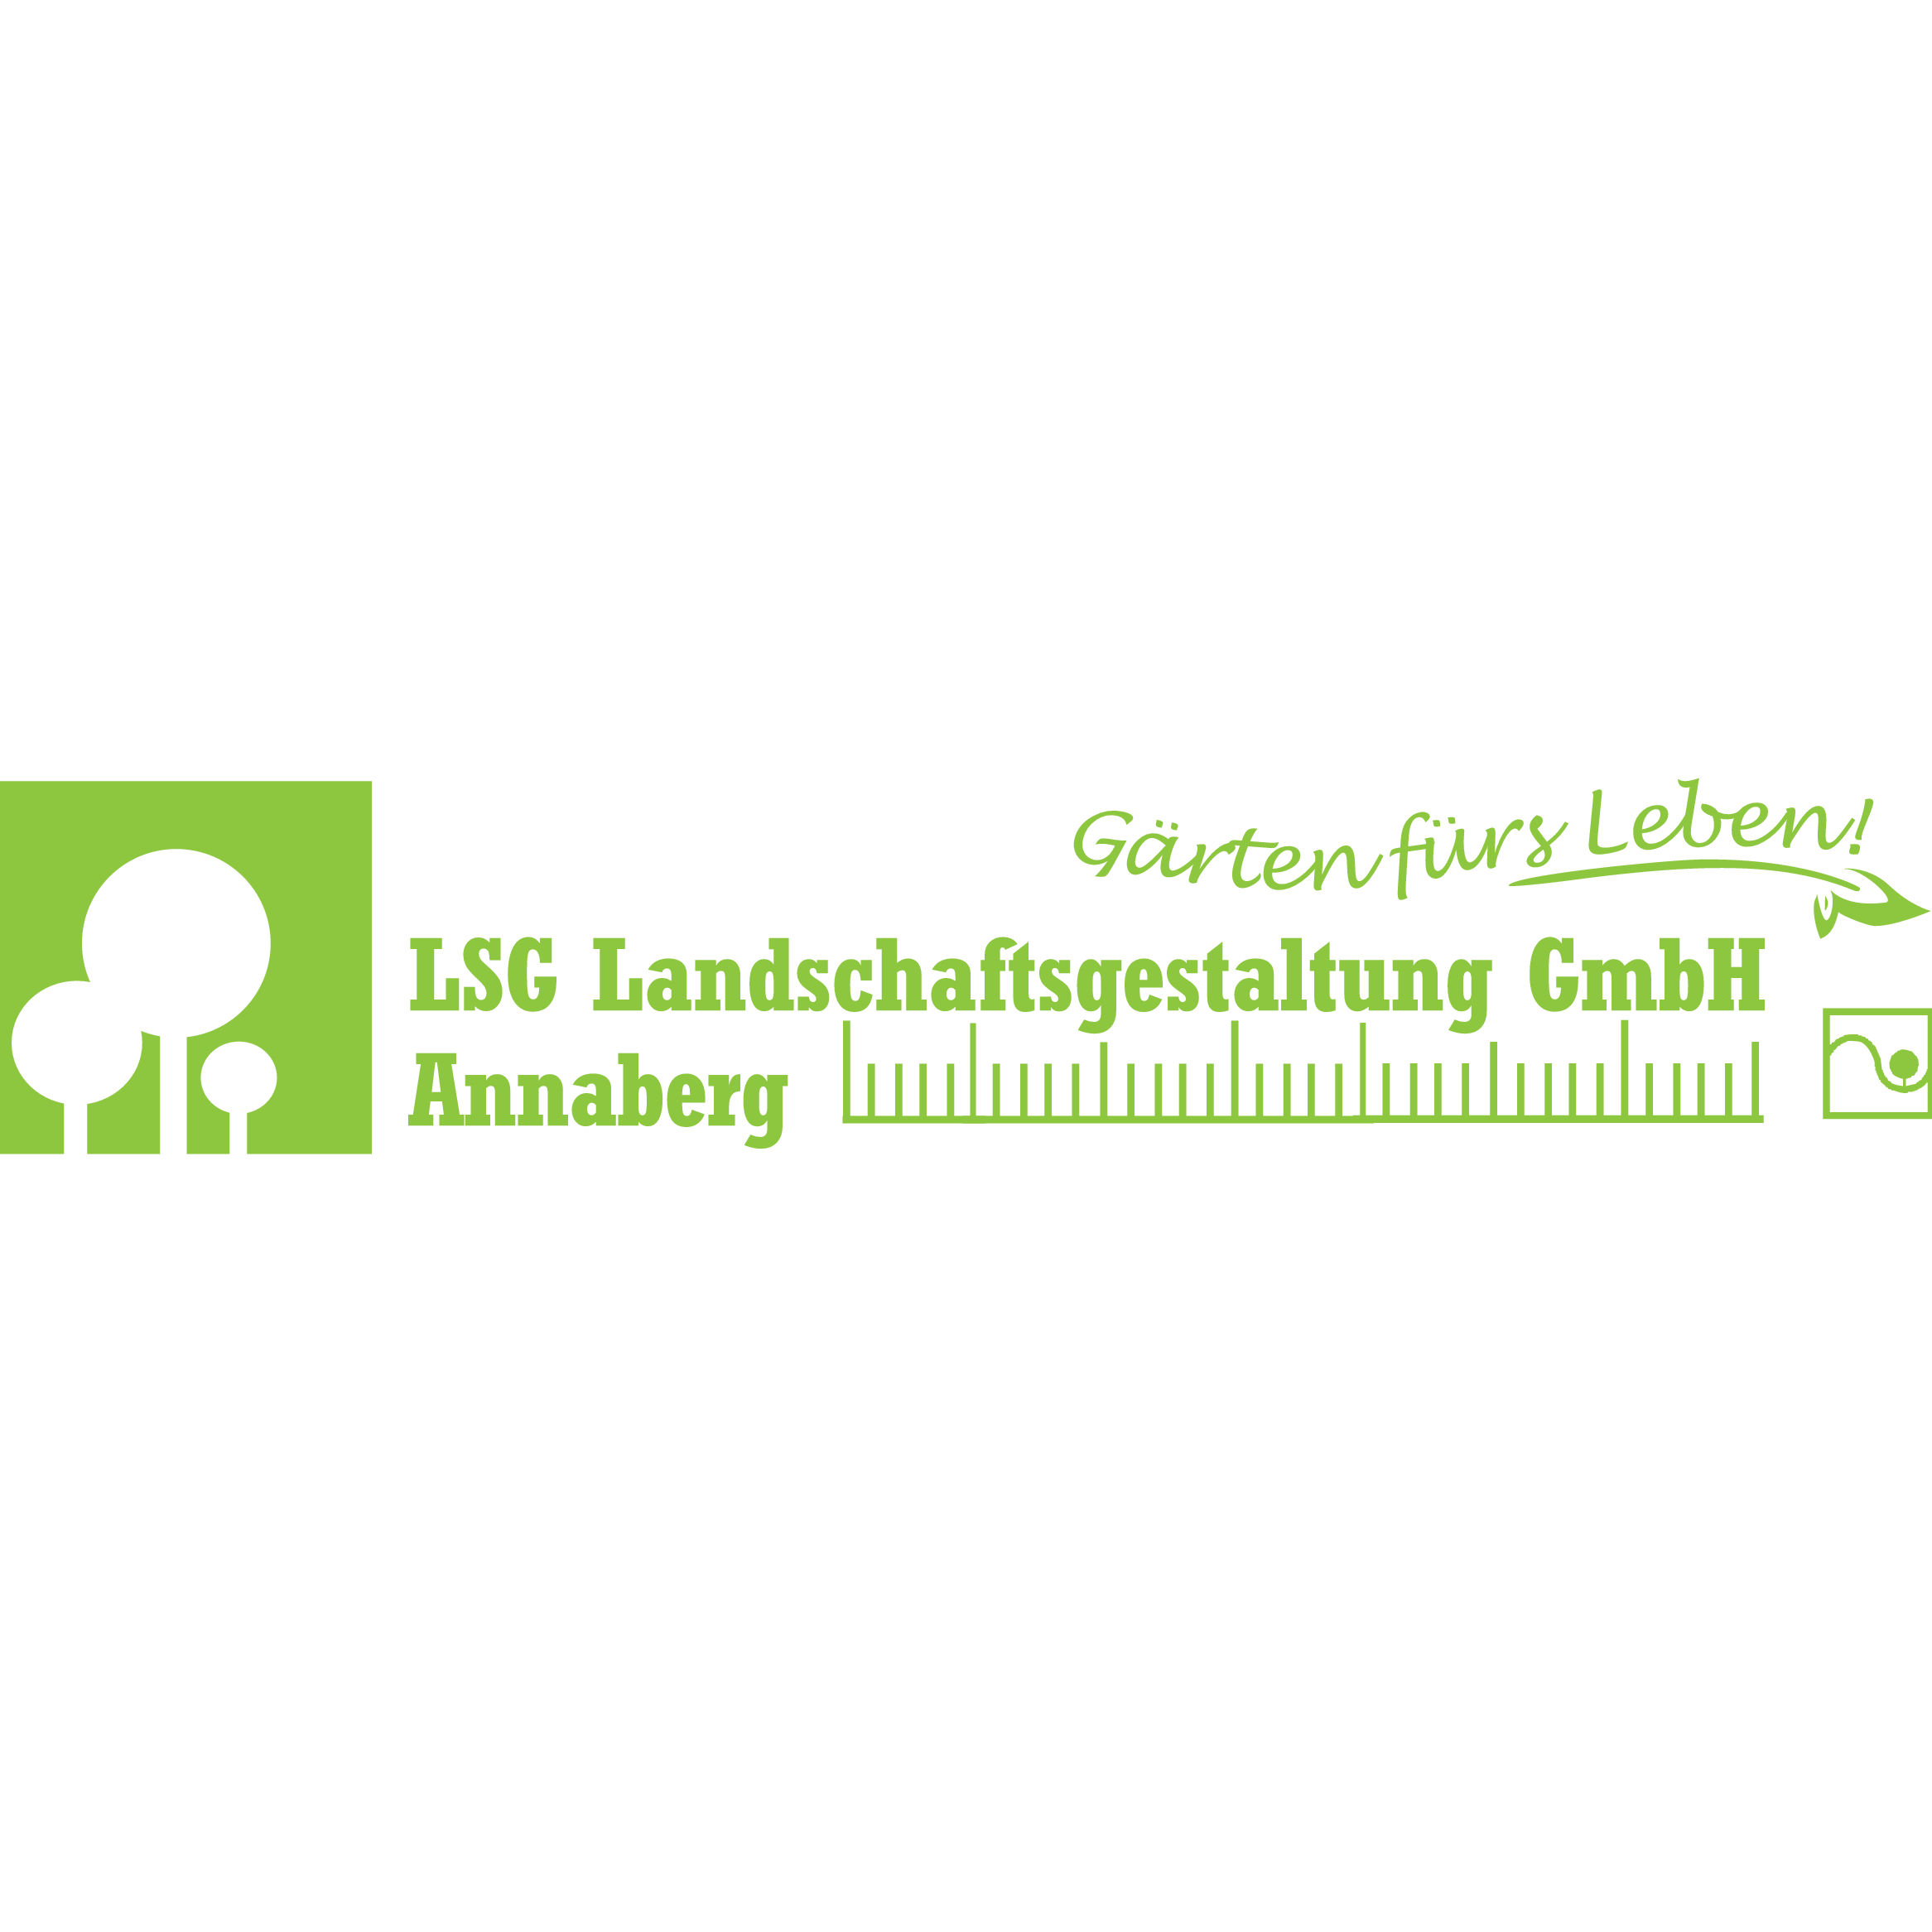 LSG Landschaftsgestaltung GmbH Annaberg in Annaberg Buchholz - Logo